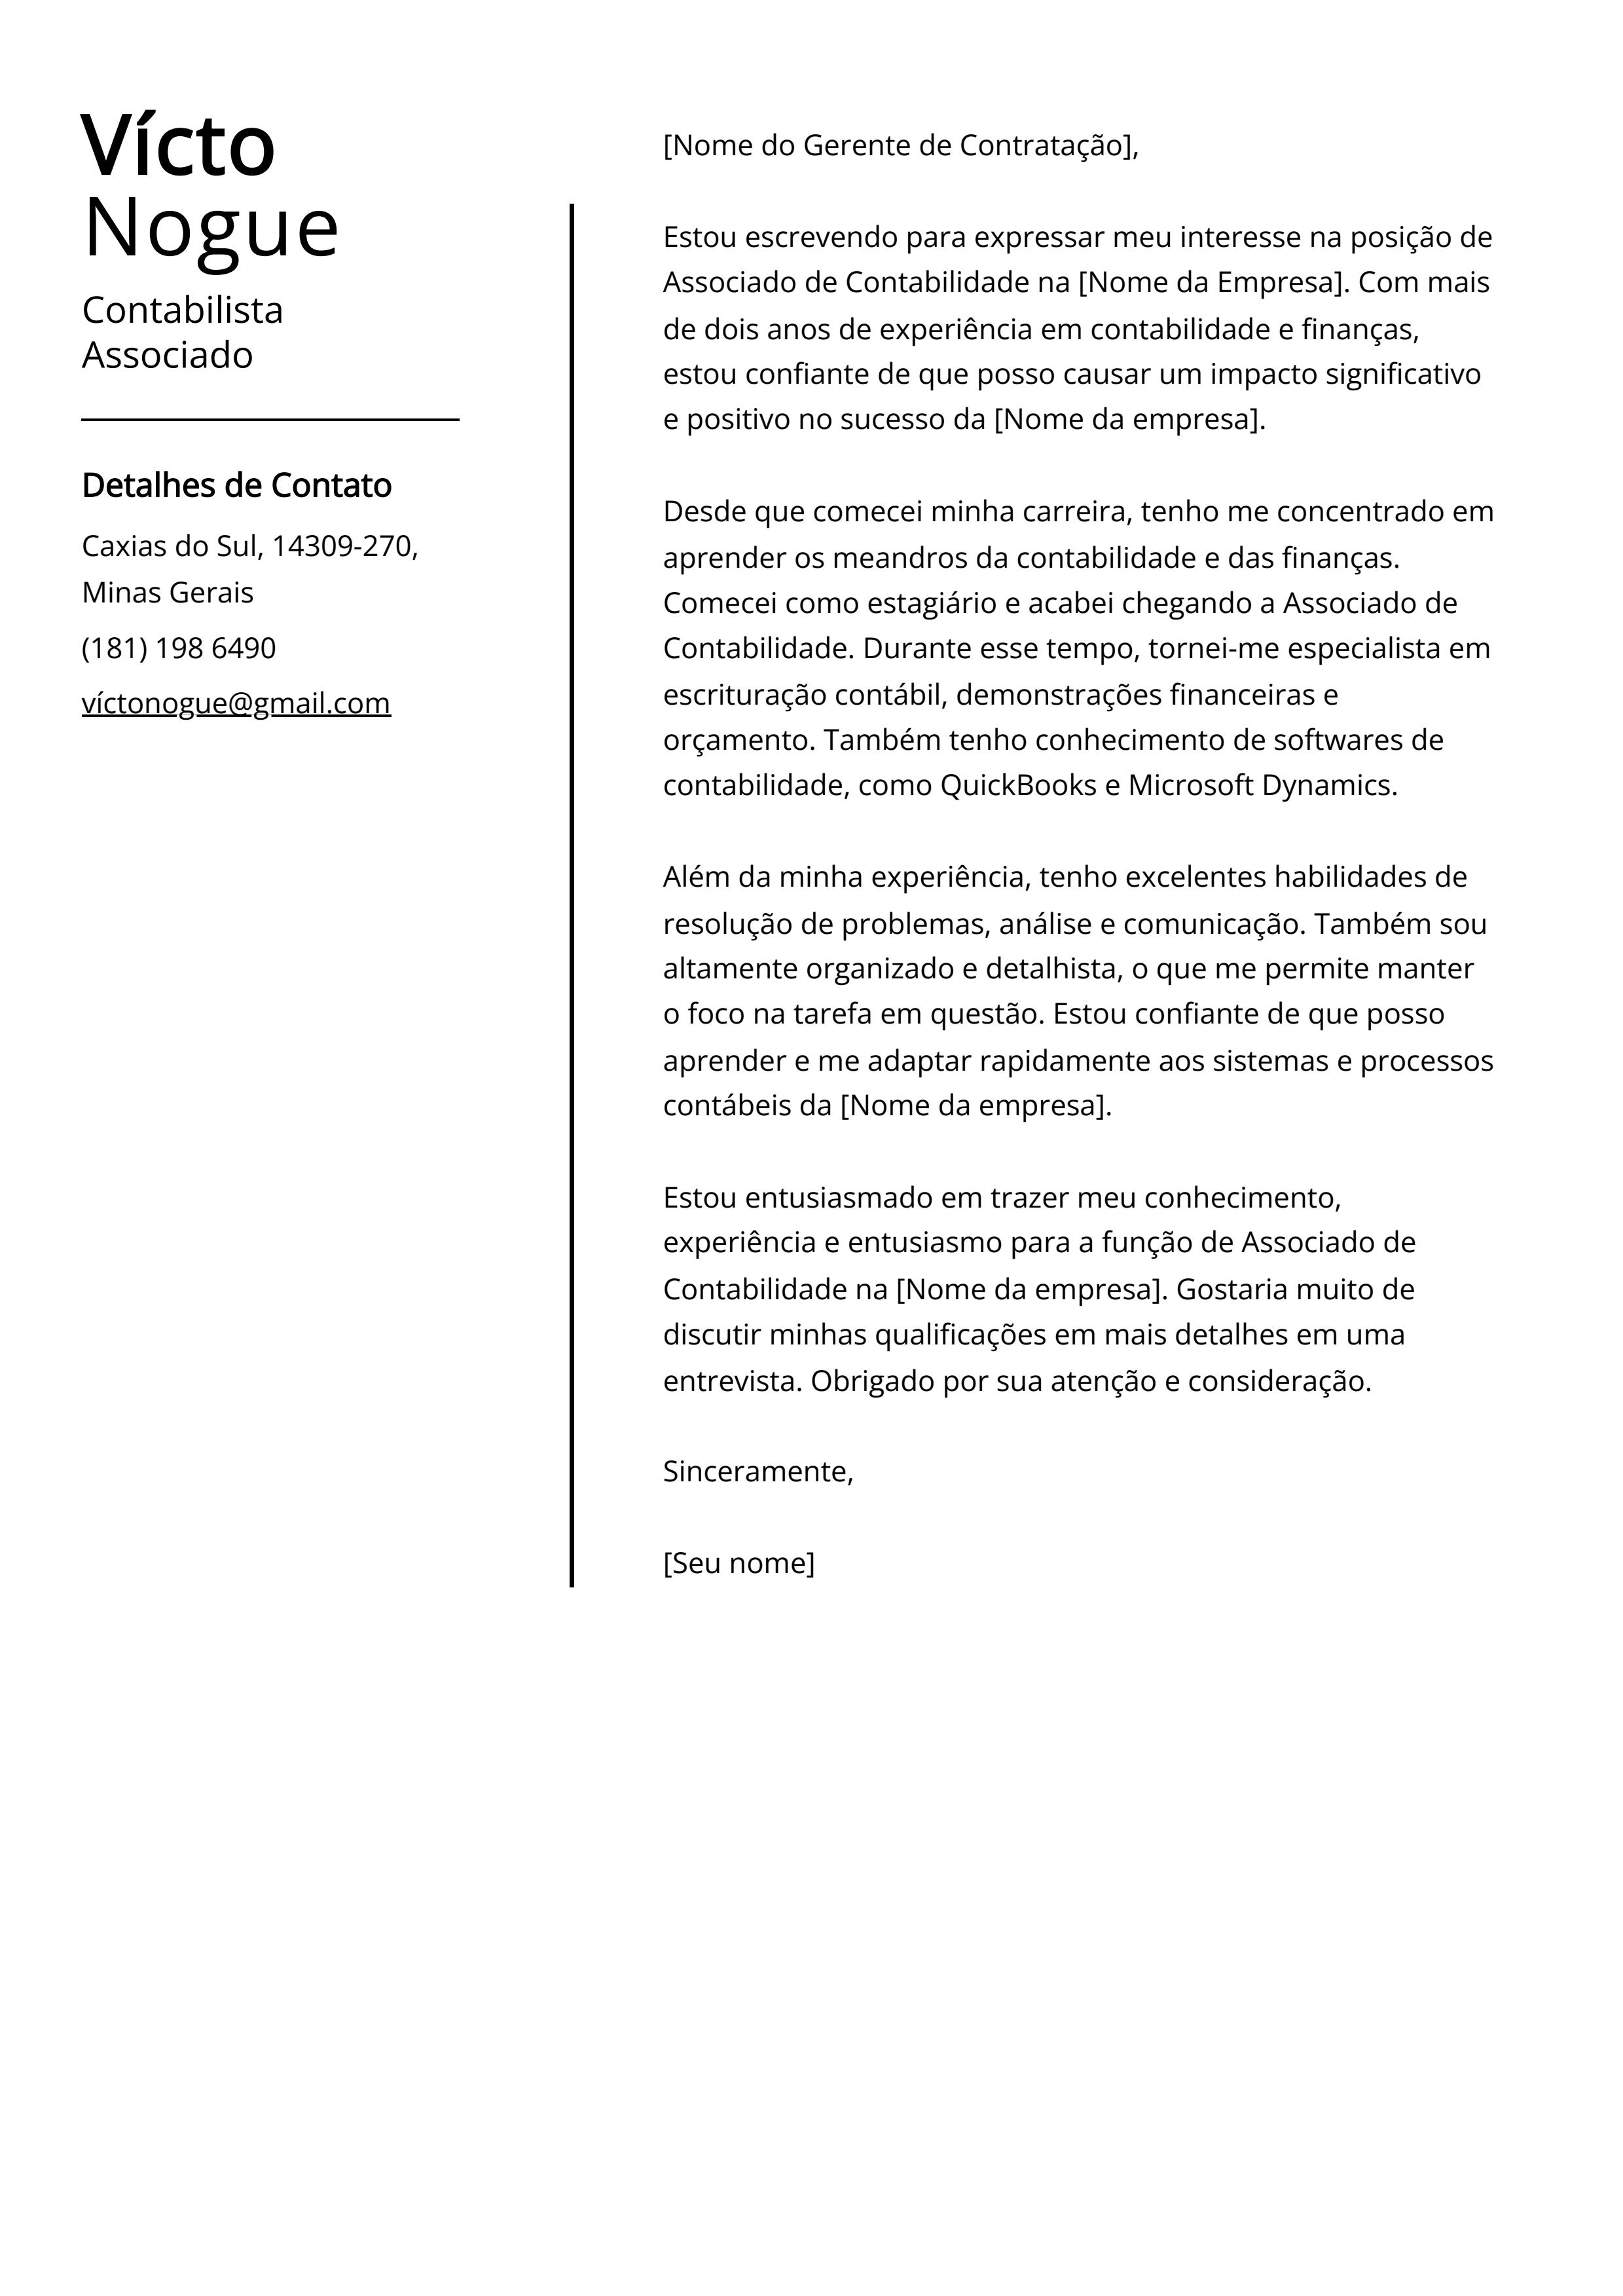 Exemplo de carta de apresentação de Contabilista Associado